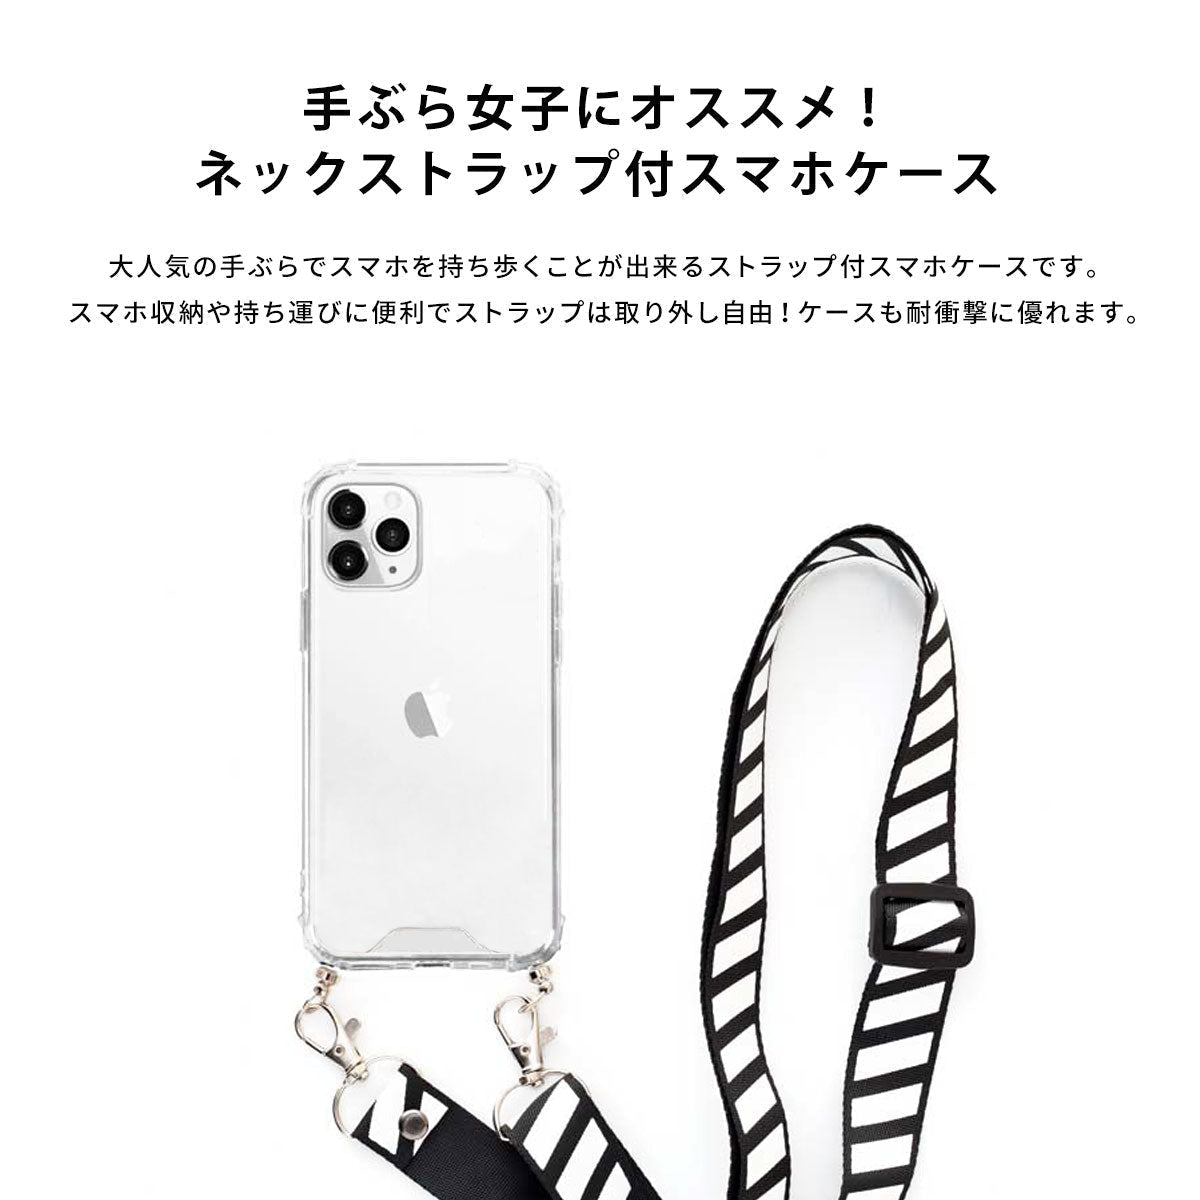 【手ぶら派に】ネックストラップ スマホケース  iPhone13 iPone12 かわいい おしゃれ  ネックストラップ付き 海 夏 名入れ